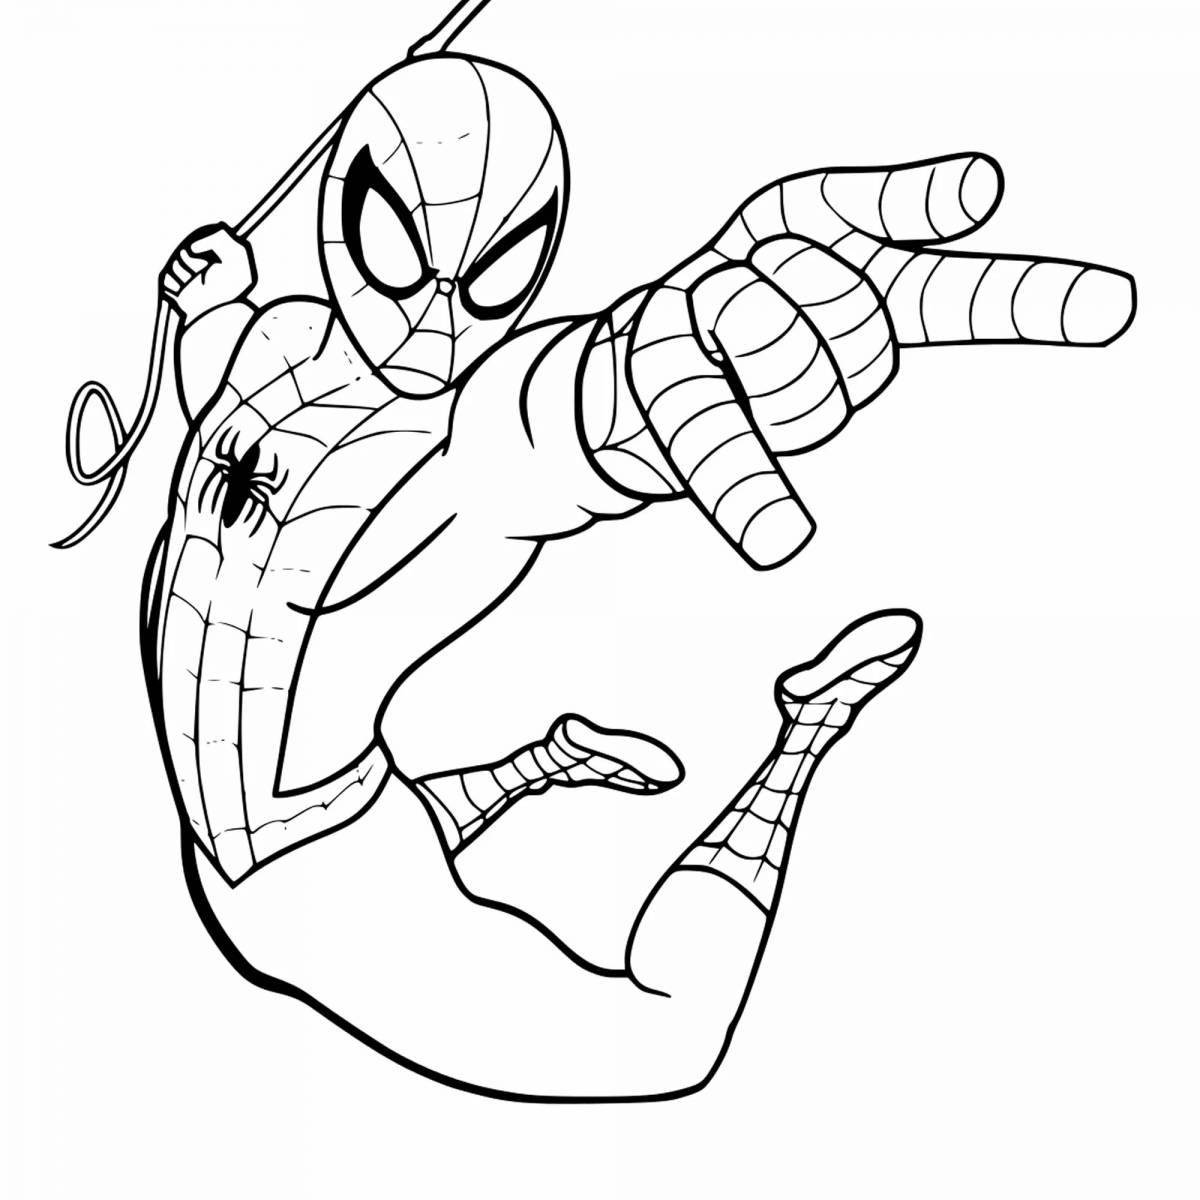 Nimble little spiderman